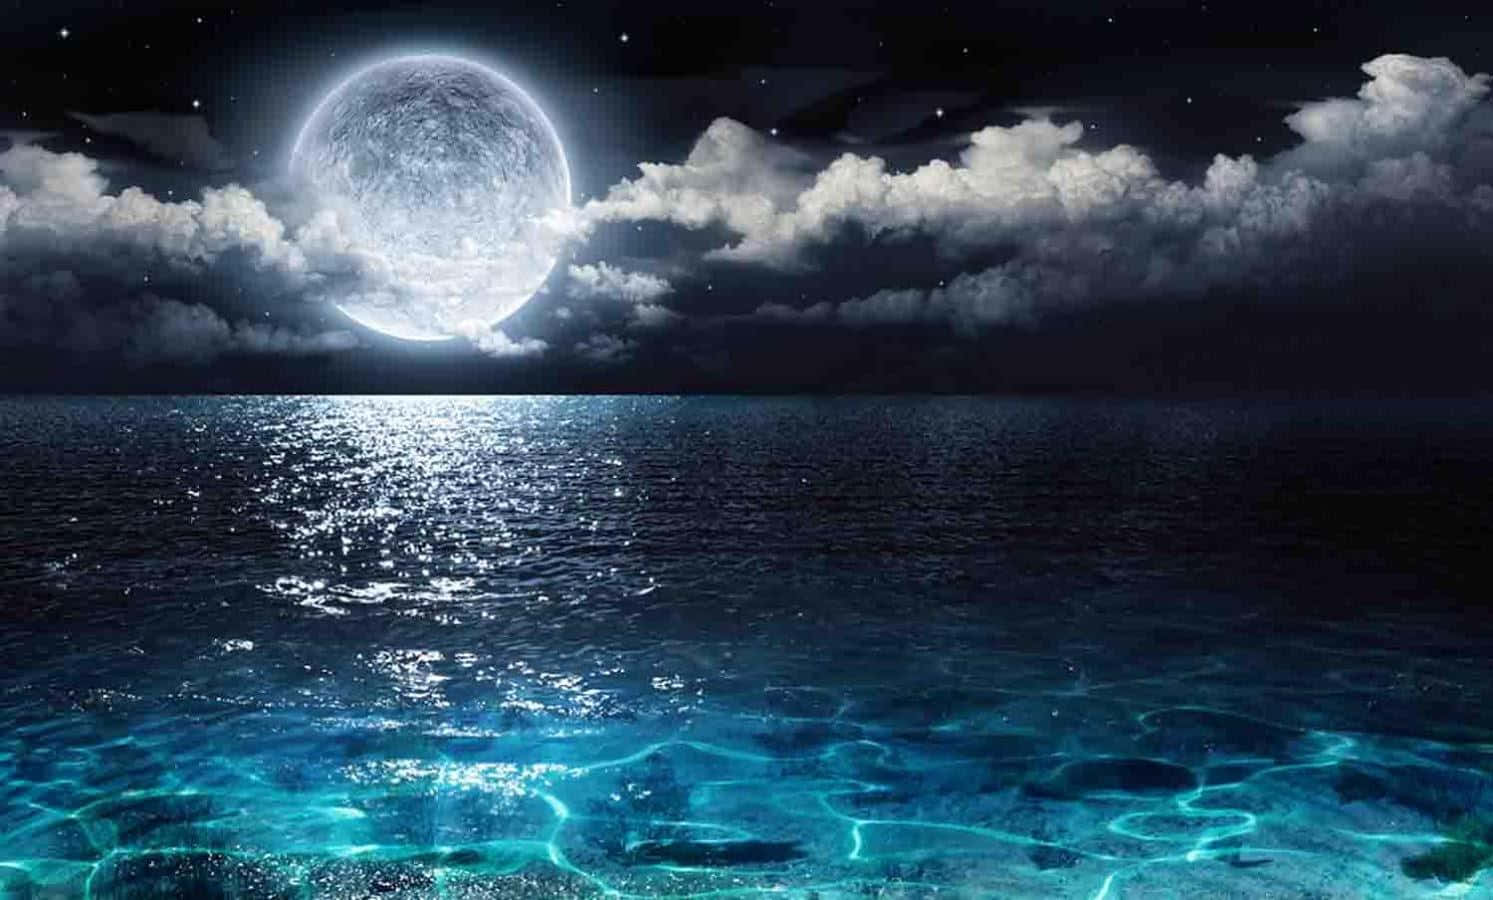 Enchanting Moonlit Landscape on Water